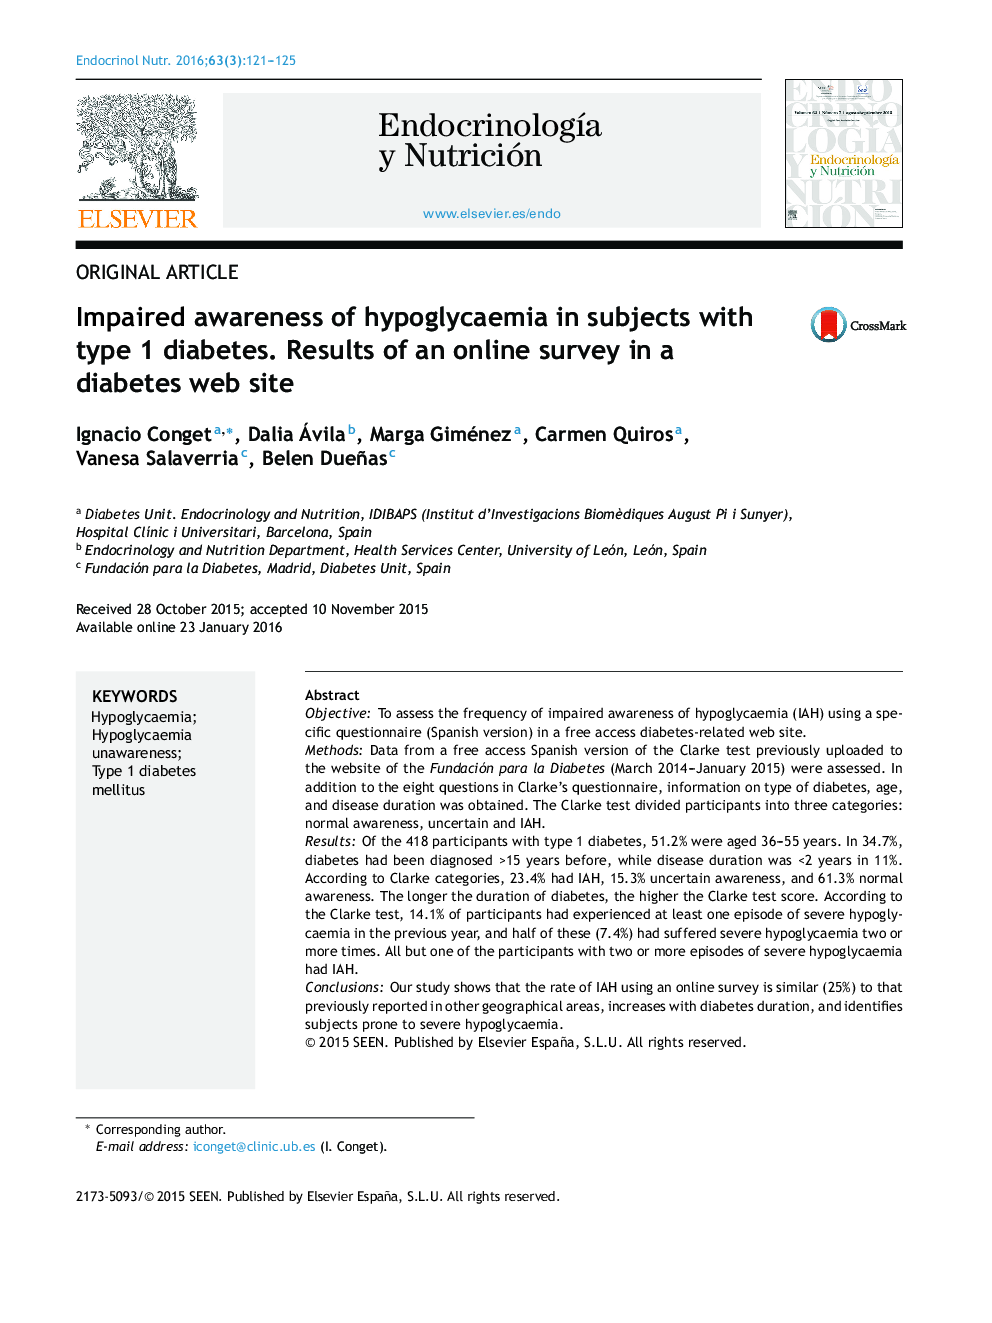 آگاهی ناشی از هیپوگلیسمی در افراد مبتلا به دیابت نوع 1. نتایج یک نظرسنجی آنلاین در وب سایت دیابت 